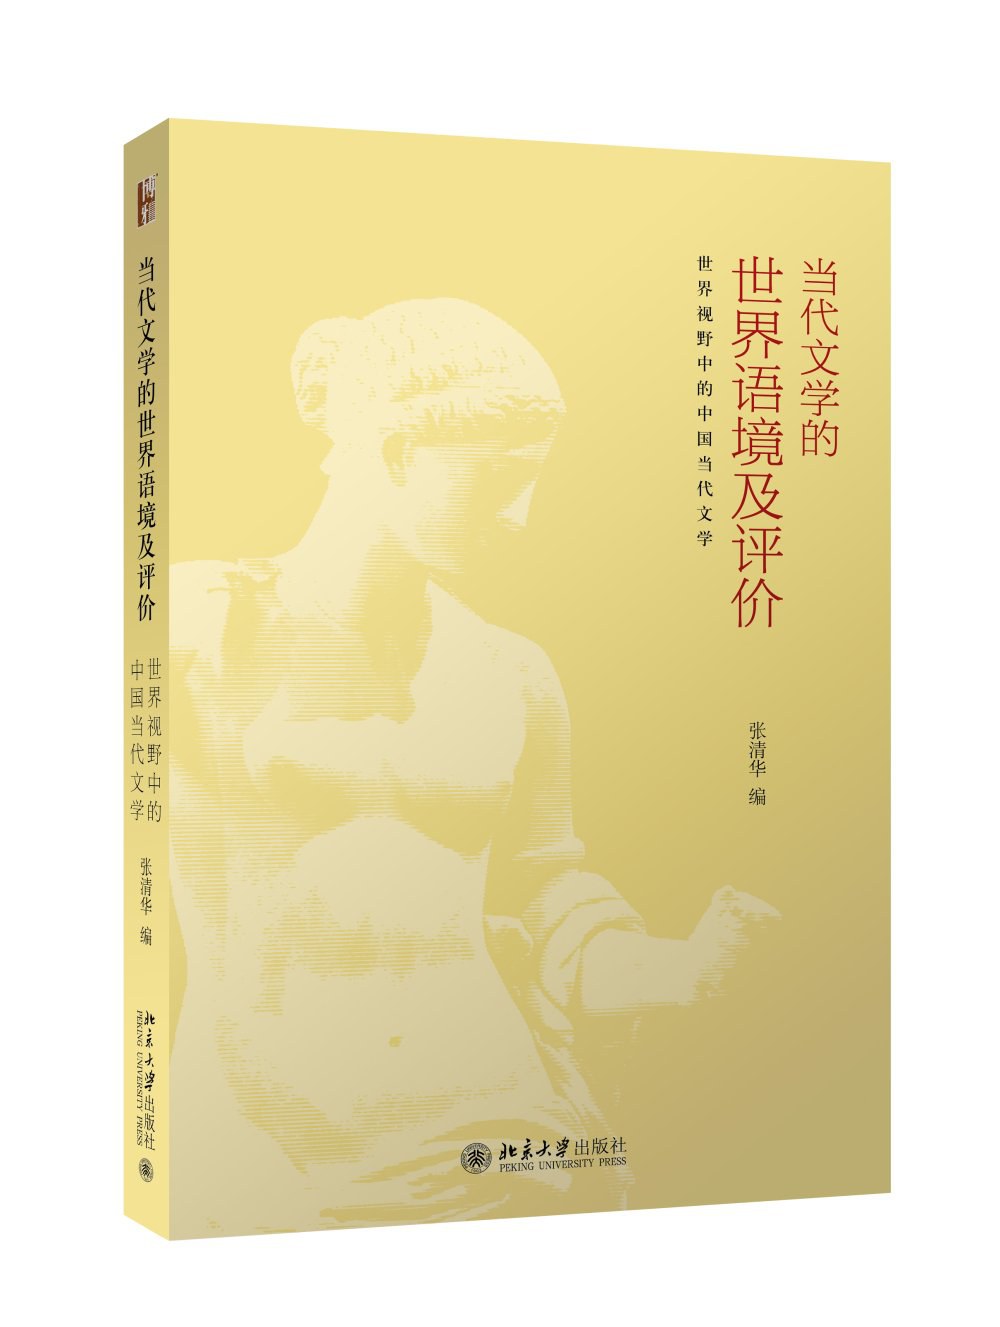 当代文学的世界语境及评价 世界视野中的中国当代文学